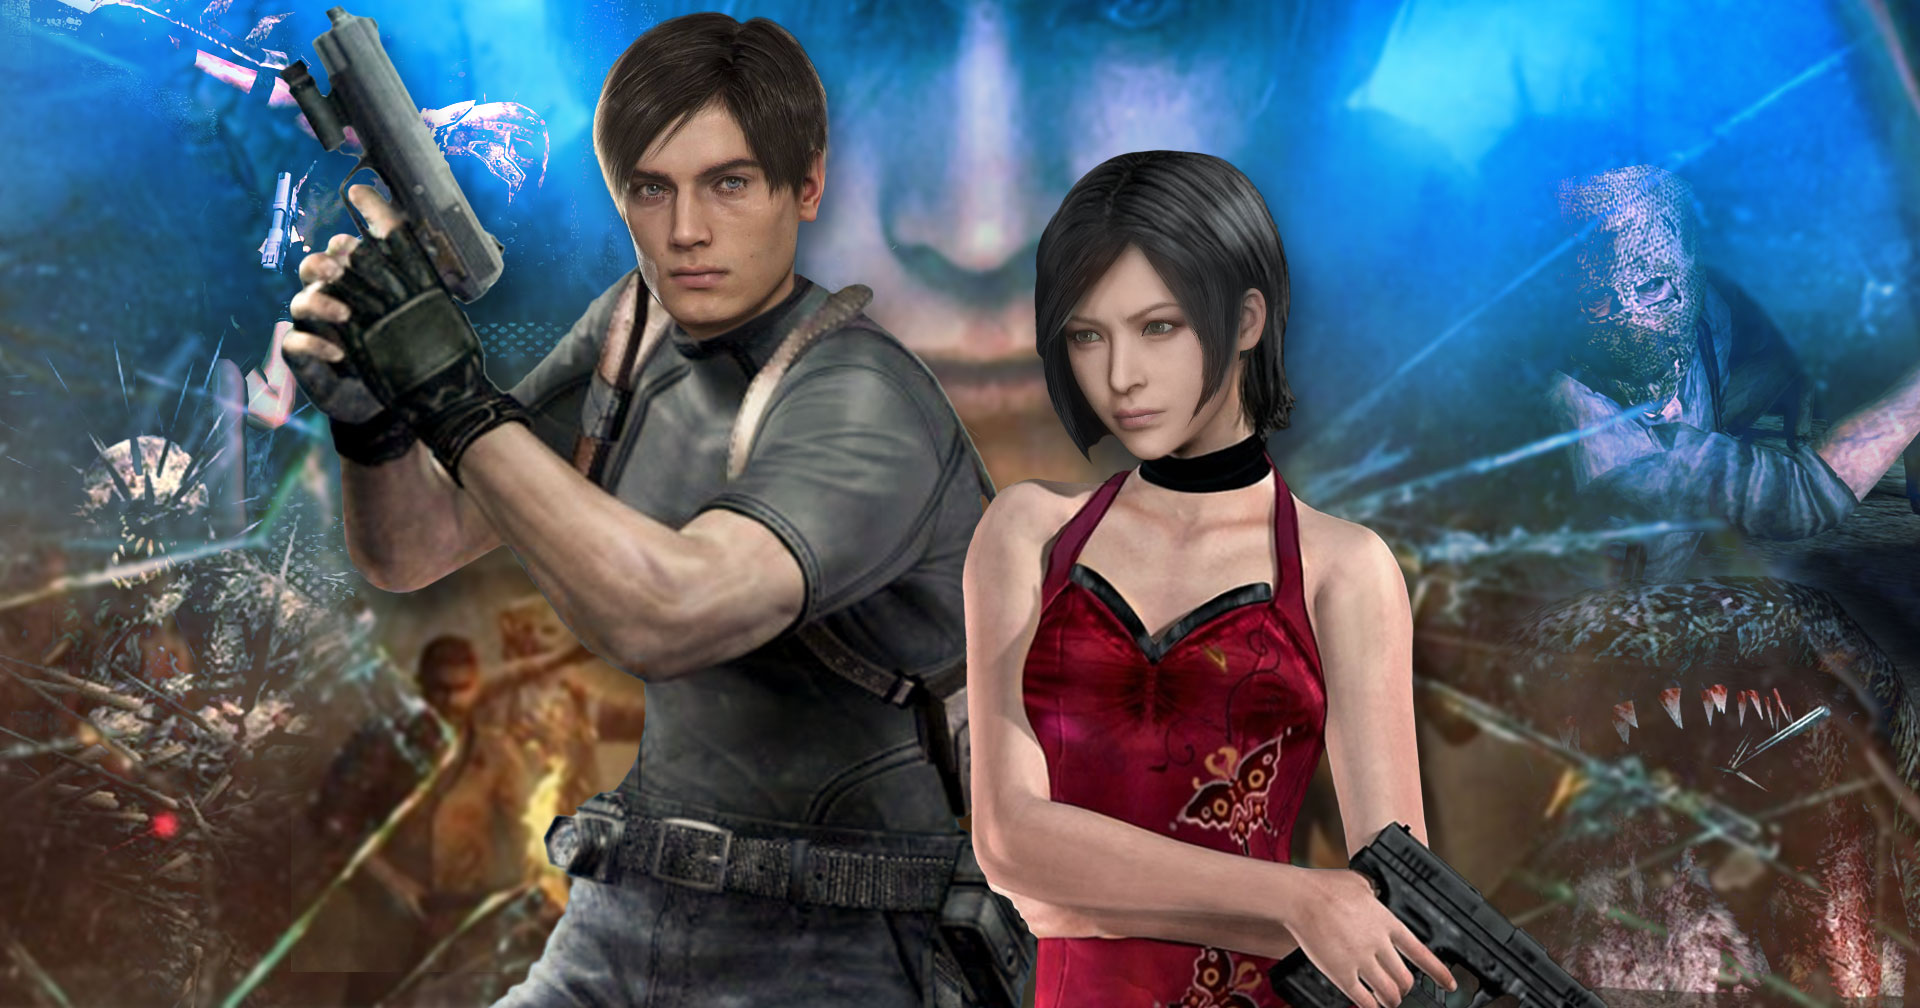 รวมความคาดหวังที่แฟน Resident Evil 4 Remake ต้องการให้เกิดขึ้นในเกม